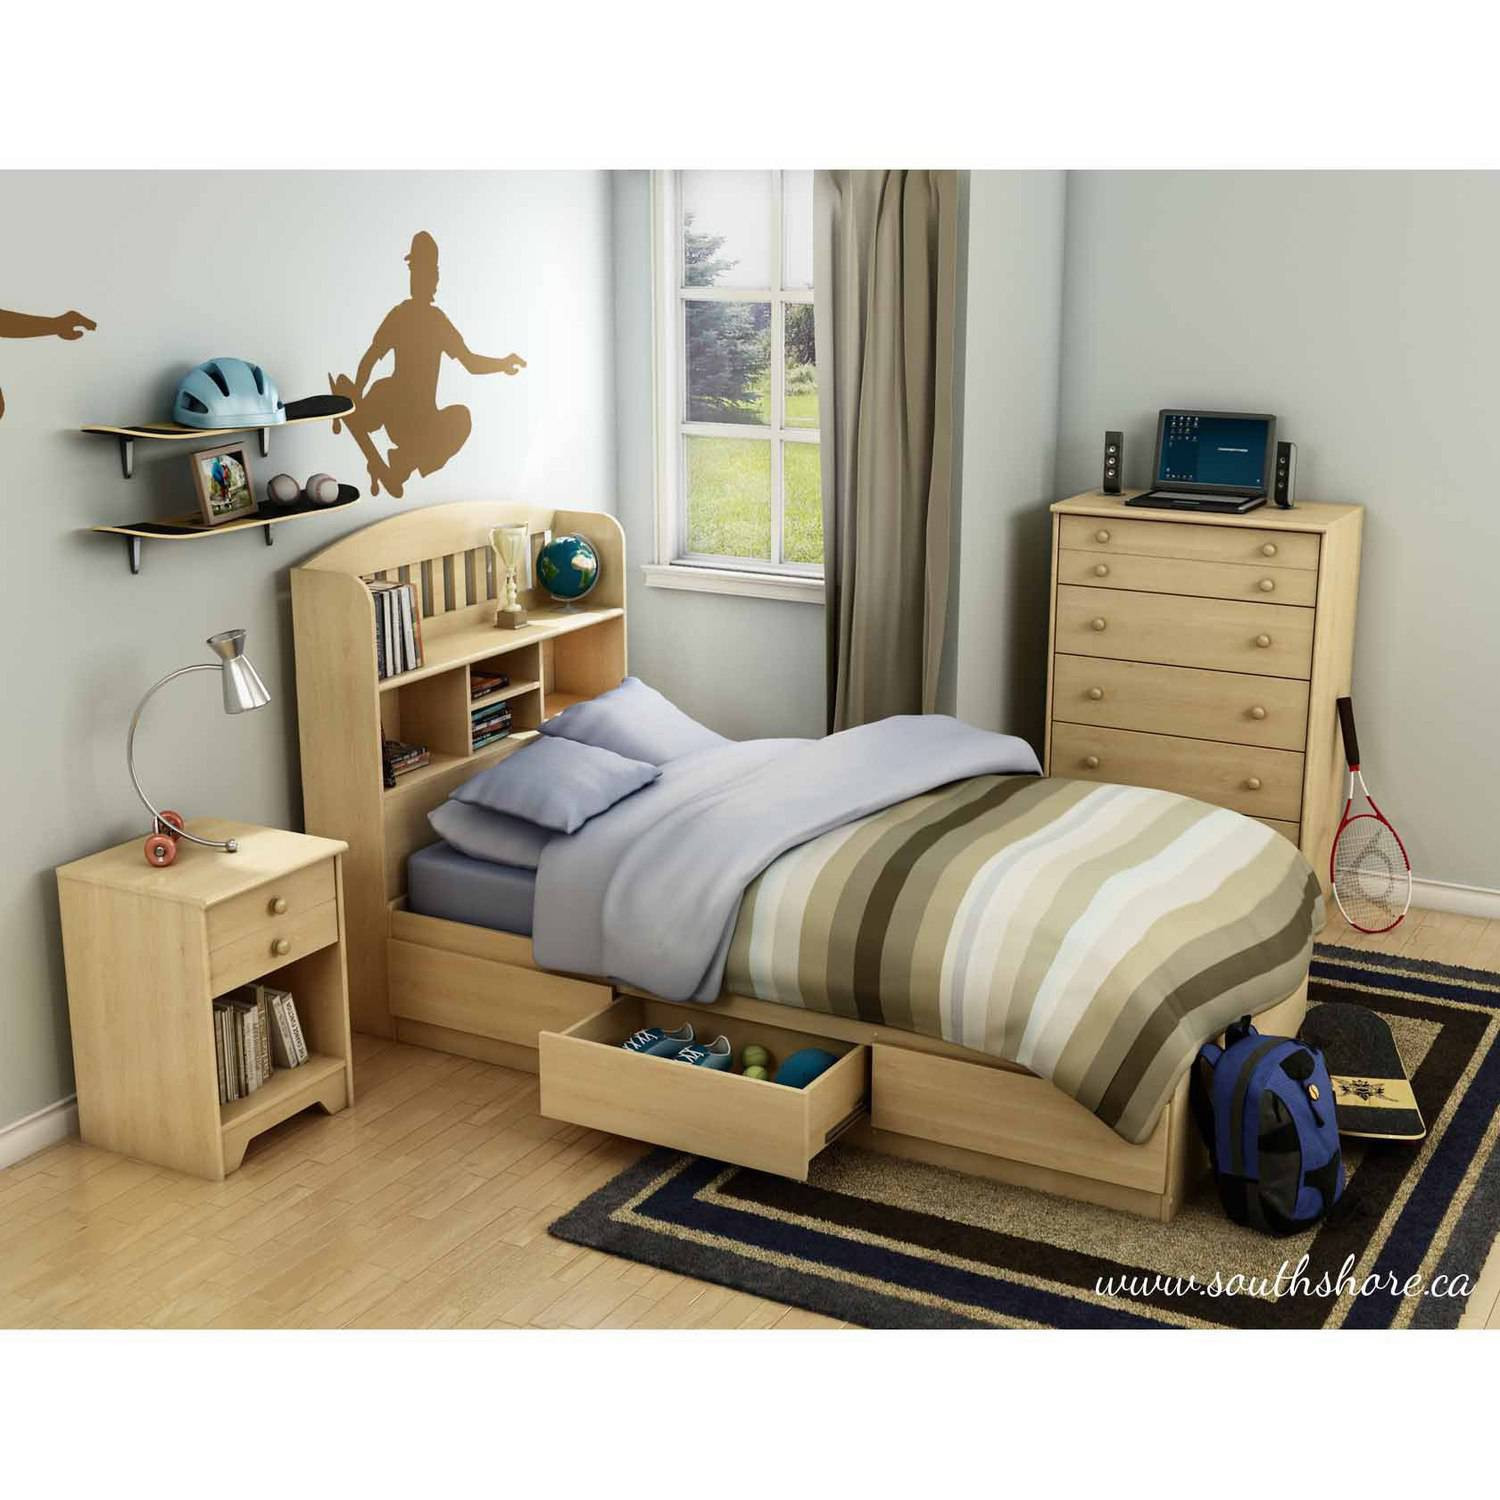 Walmart Kids Bedroom Sets
 South Shore Popular Kids Bedroom Furniture Collection